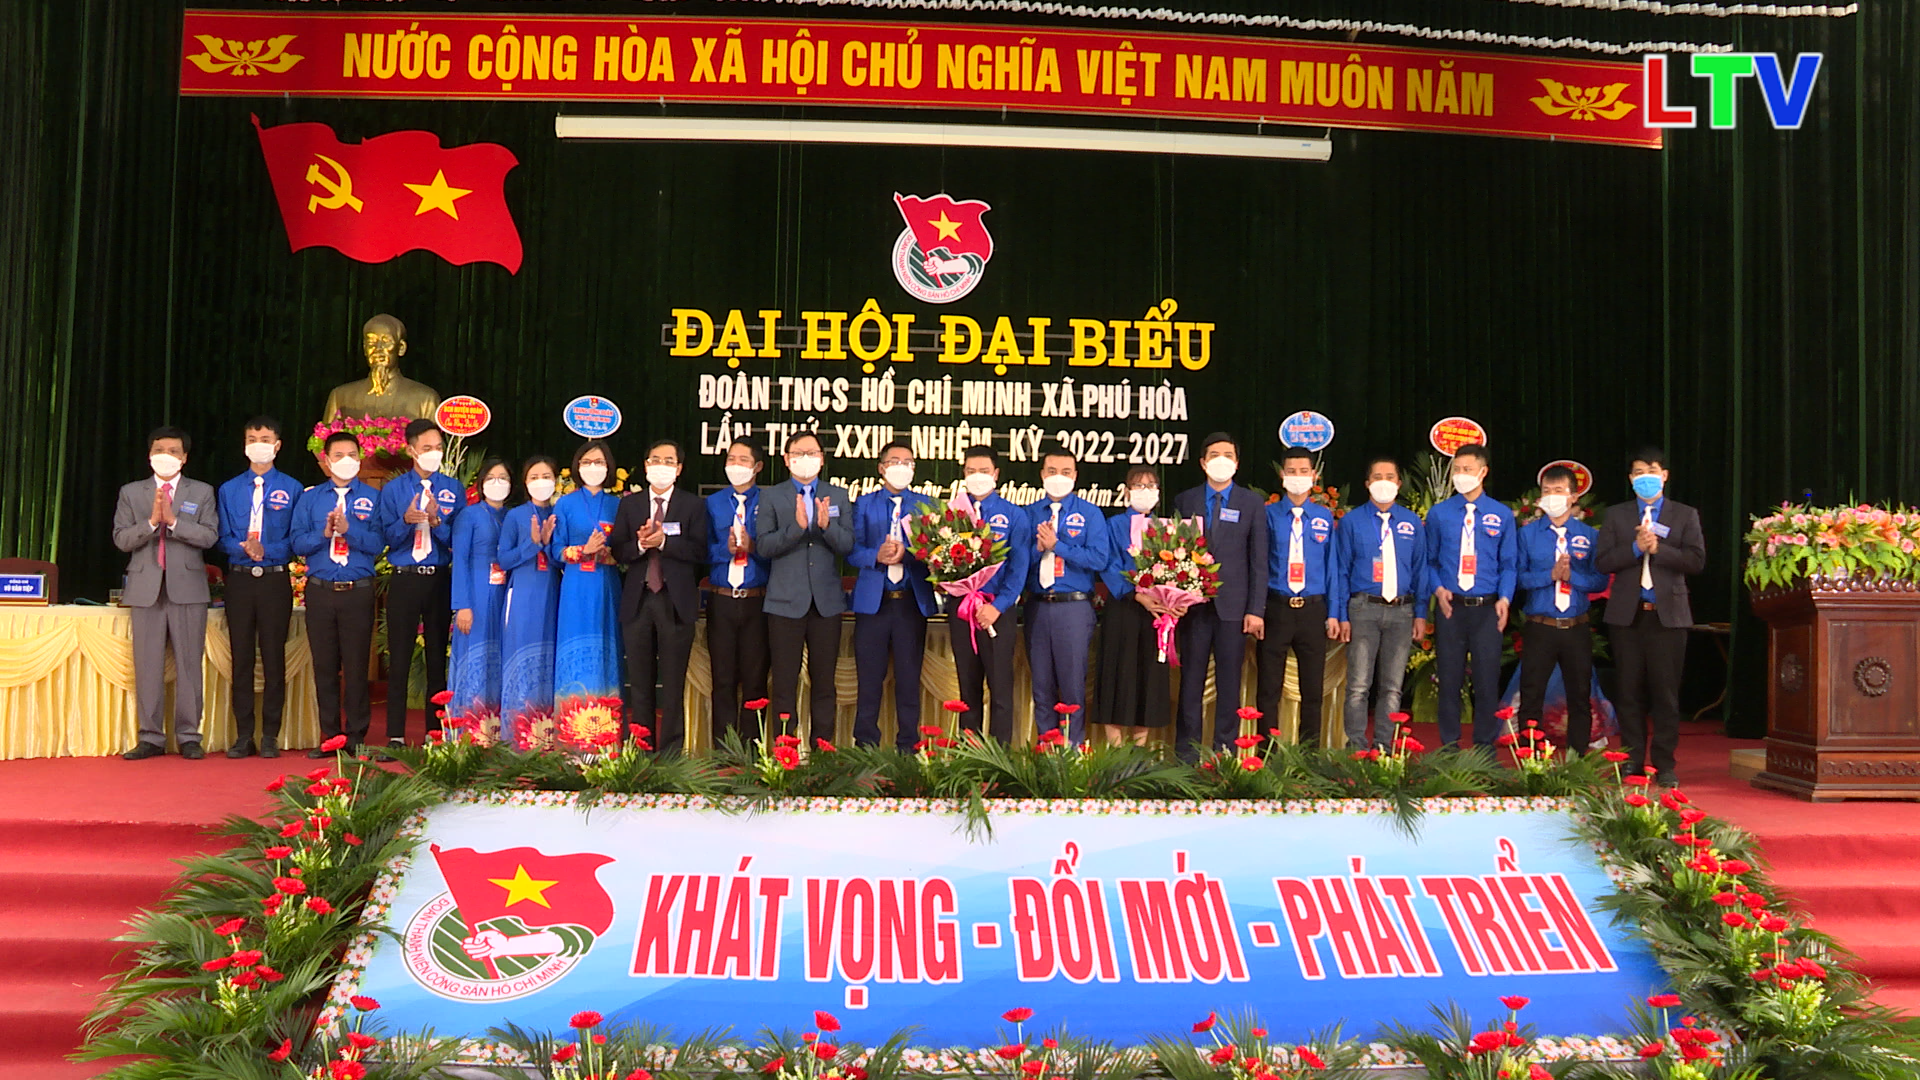 Đại hội đại biểu Đoàn xã Phú Hòa lần thứ XXIII, nhiệm kỳ 2022-2027.mp4